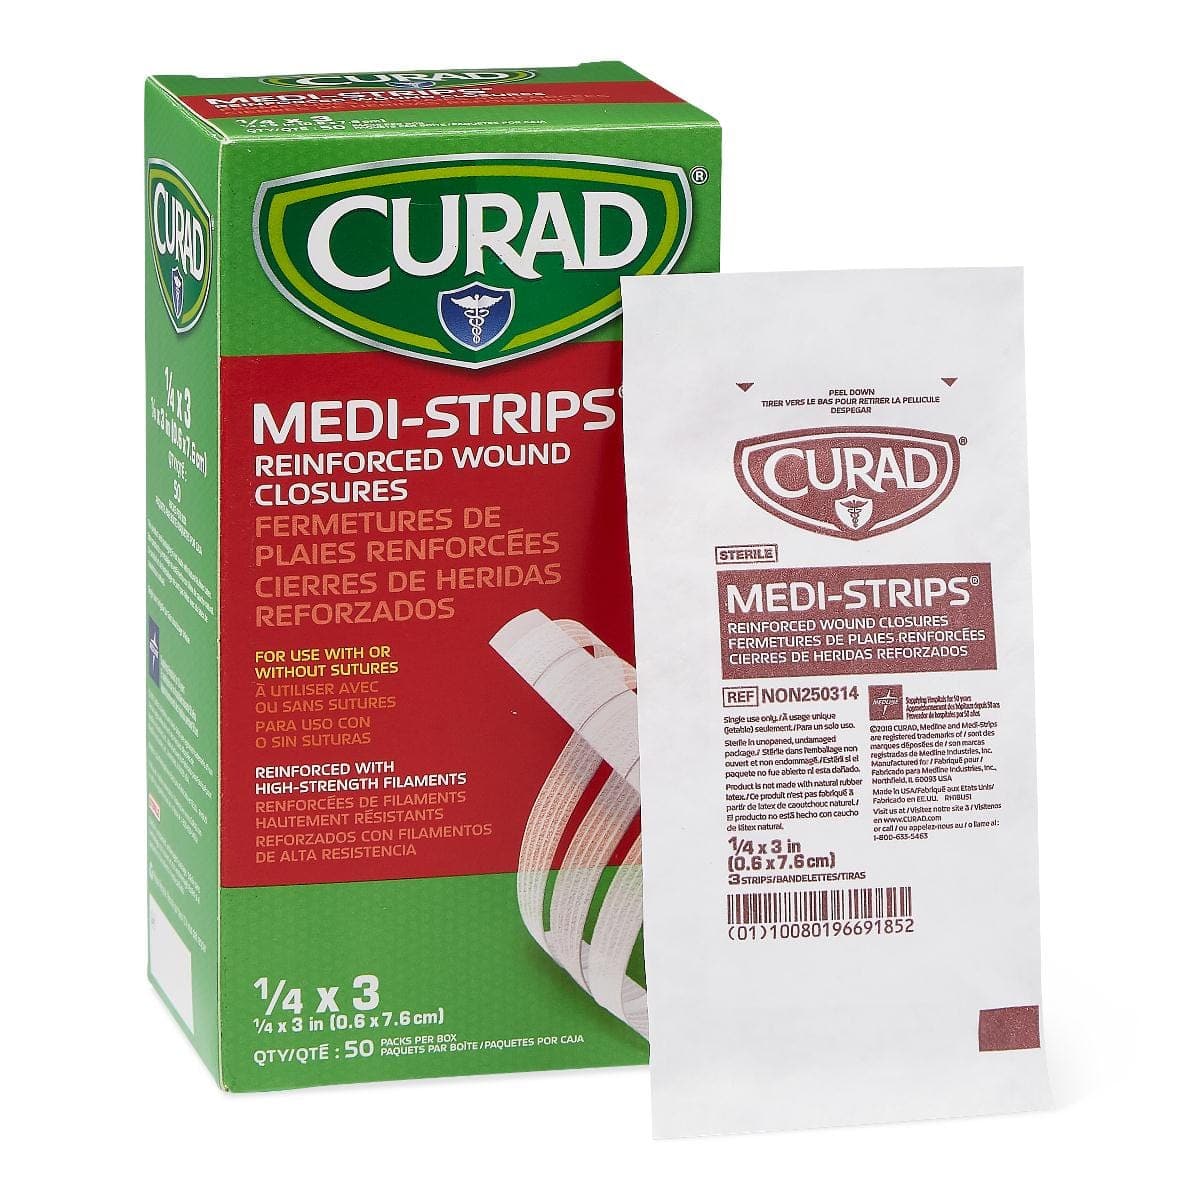 Medline 1/4"x3" / Pack of 3 Medline CURAD Medi-Strip Reinforced Wound Closures